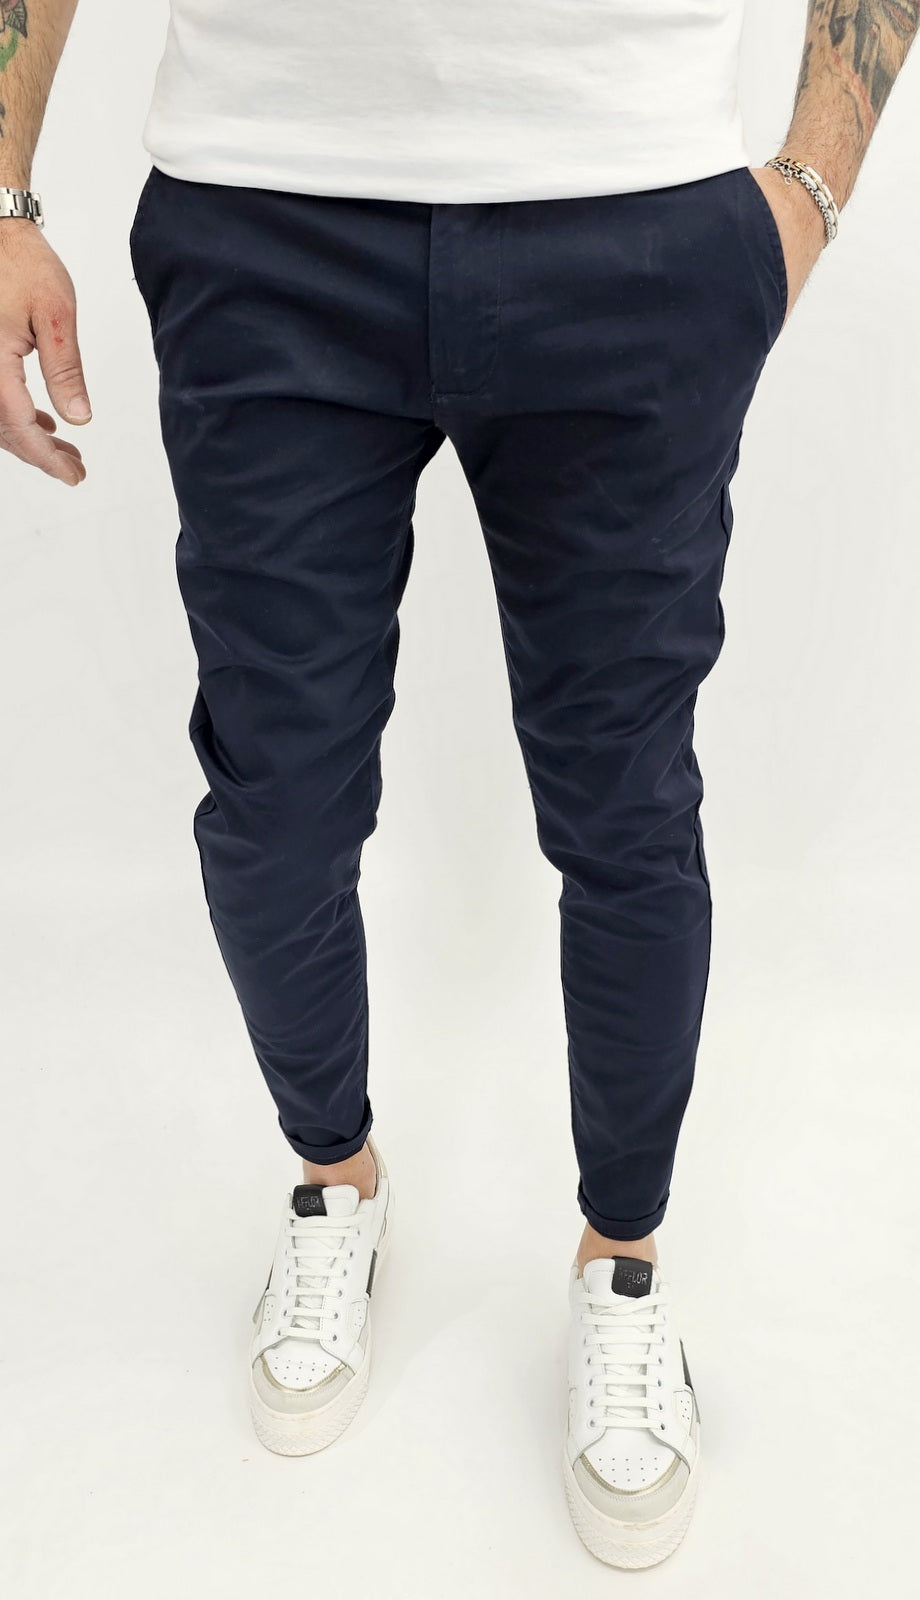 Pantalone Capri cotone  Elastico Tasche America 4 colori Sabbia Nero Blu bianco